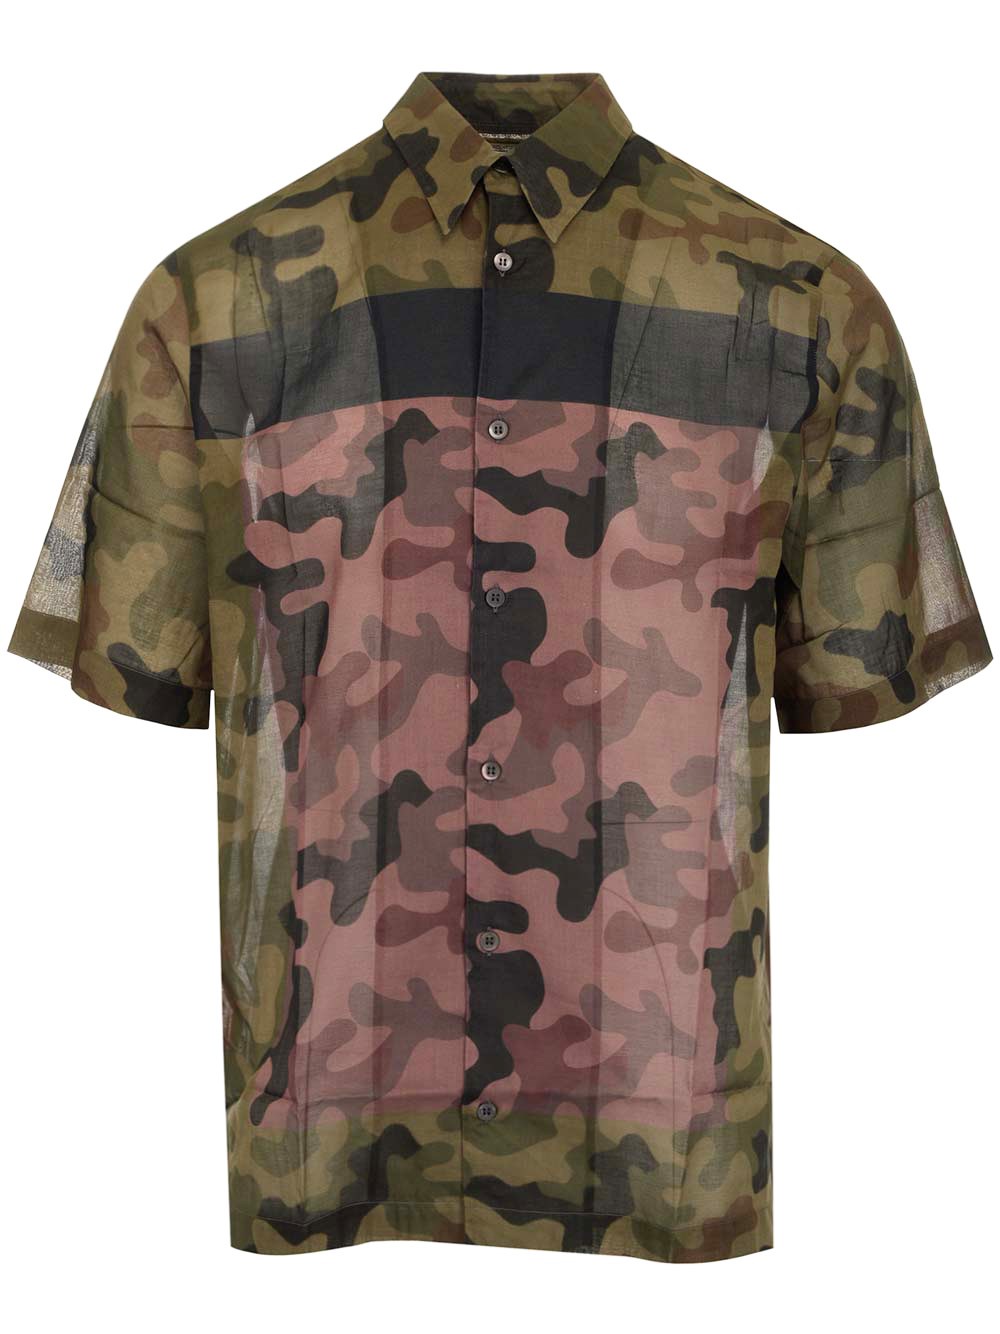 Dries Van Noten Camouflage shirt for Men - GE | Al Duca d'Aosta